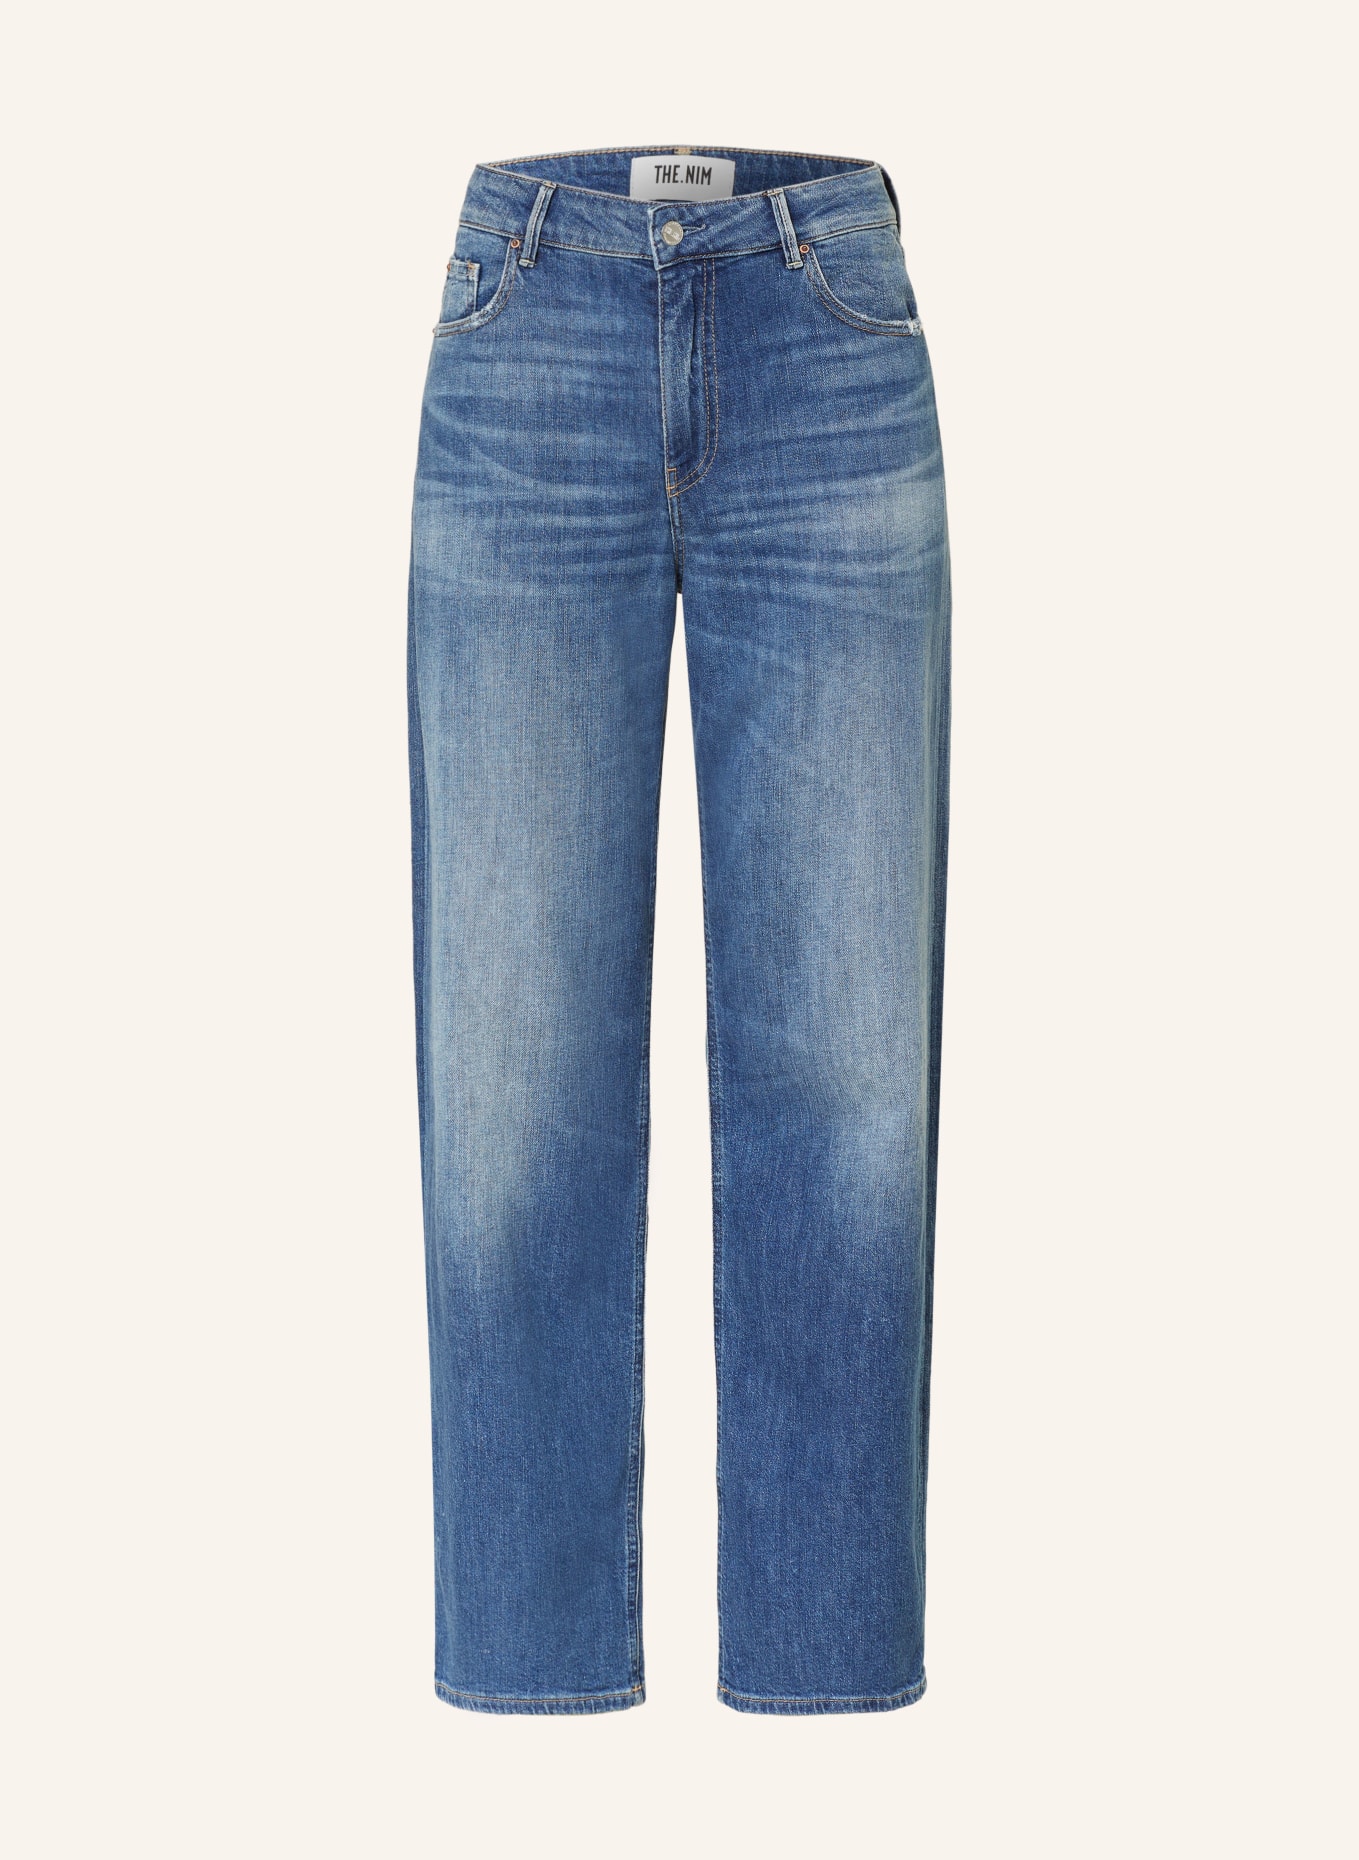 THE.NIM STANDARD Jeans EMMA Straight Fit, Farbe: W854-MDV MID BLUE (Bild 1)